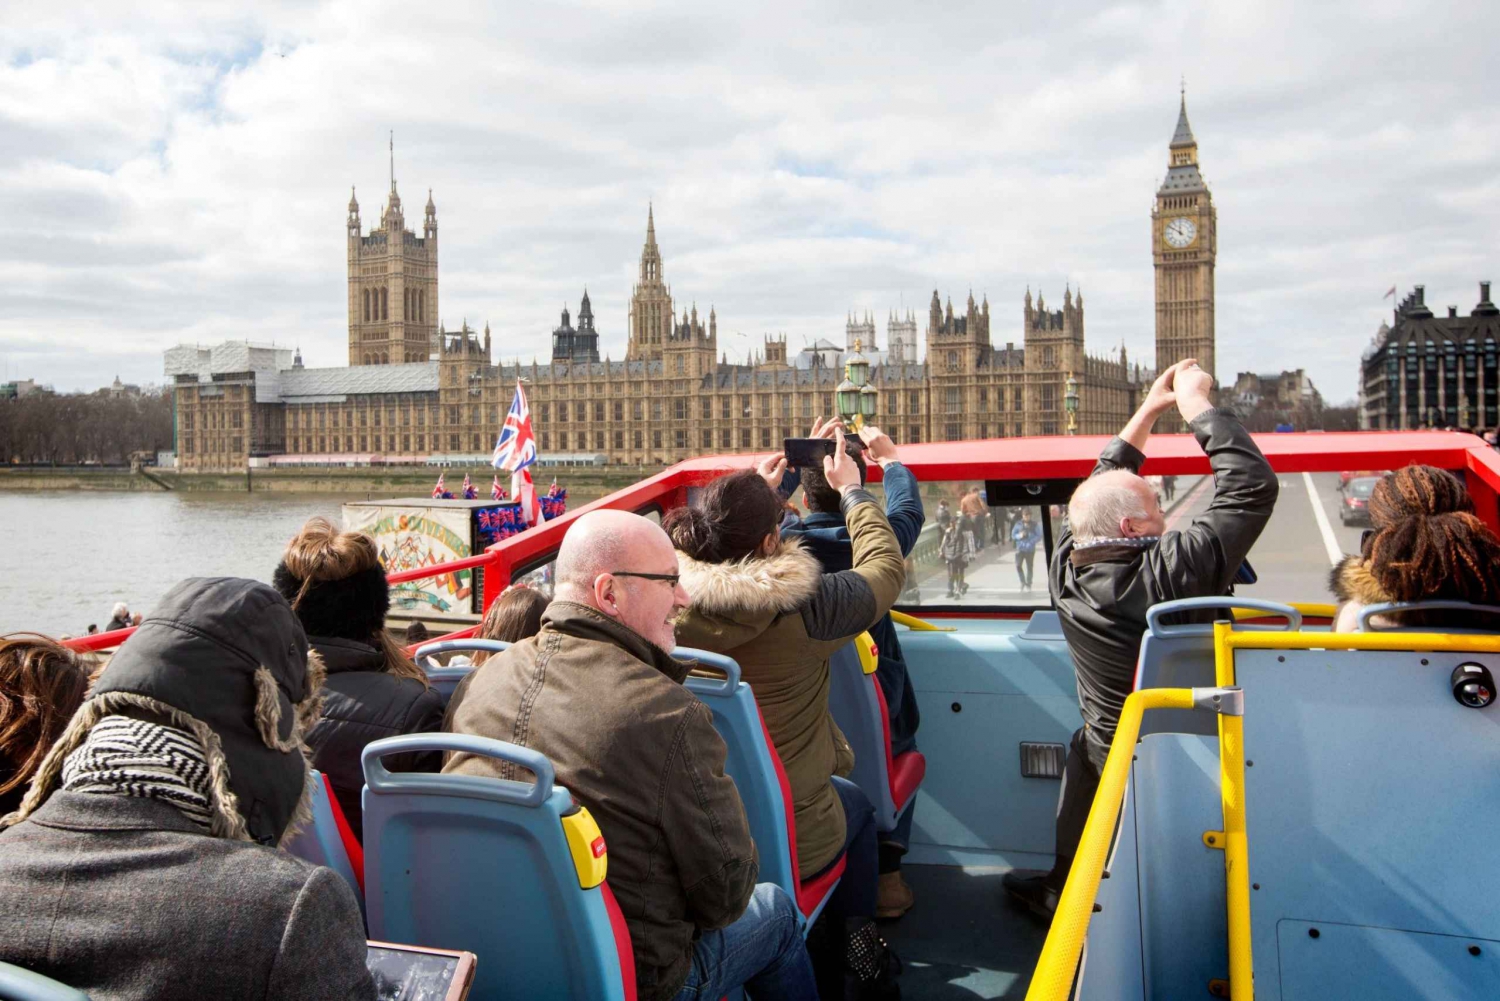 London: Harry Potter Walking Tour & Hop-on Hop-off Bus Tour